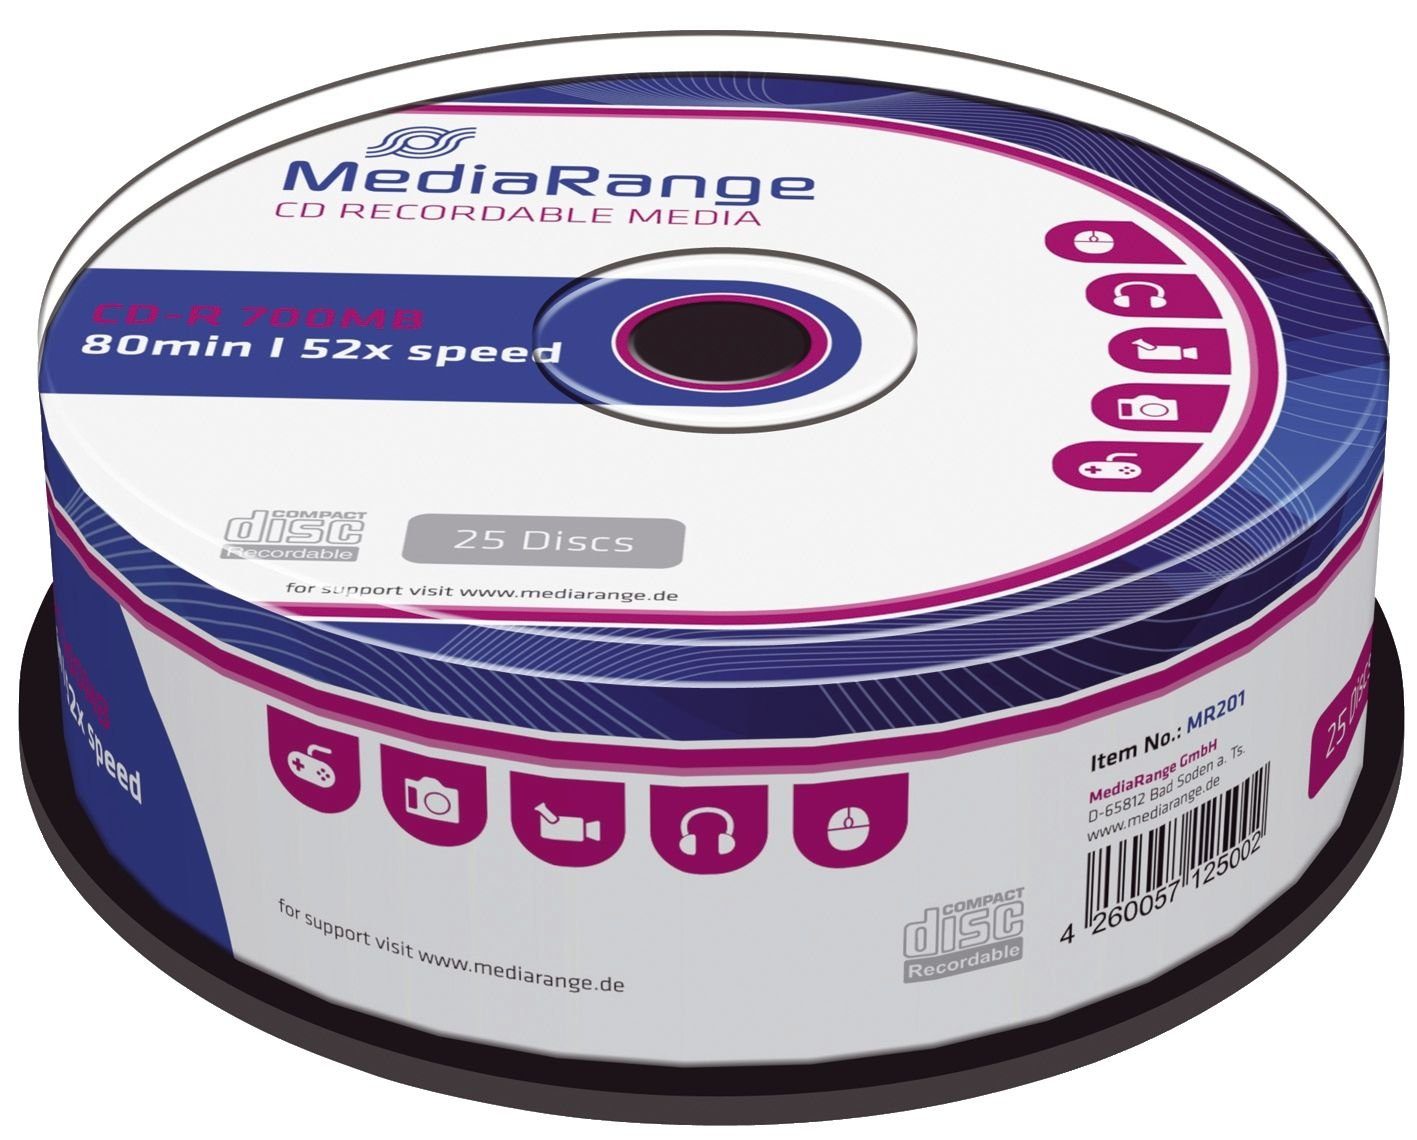 Mediarange Klemmen MediaRange CD-R 700MB 25pcs Spindel 52x